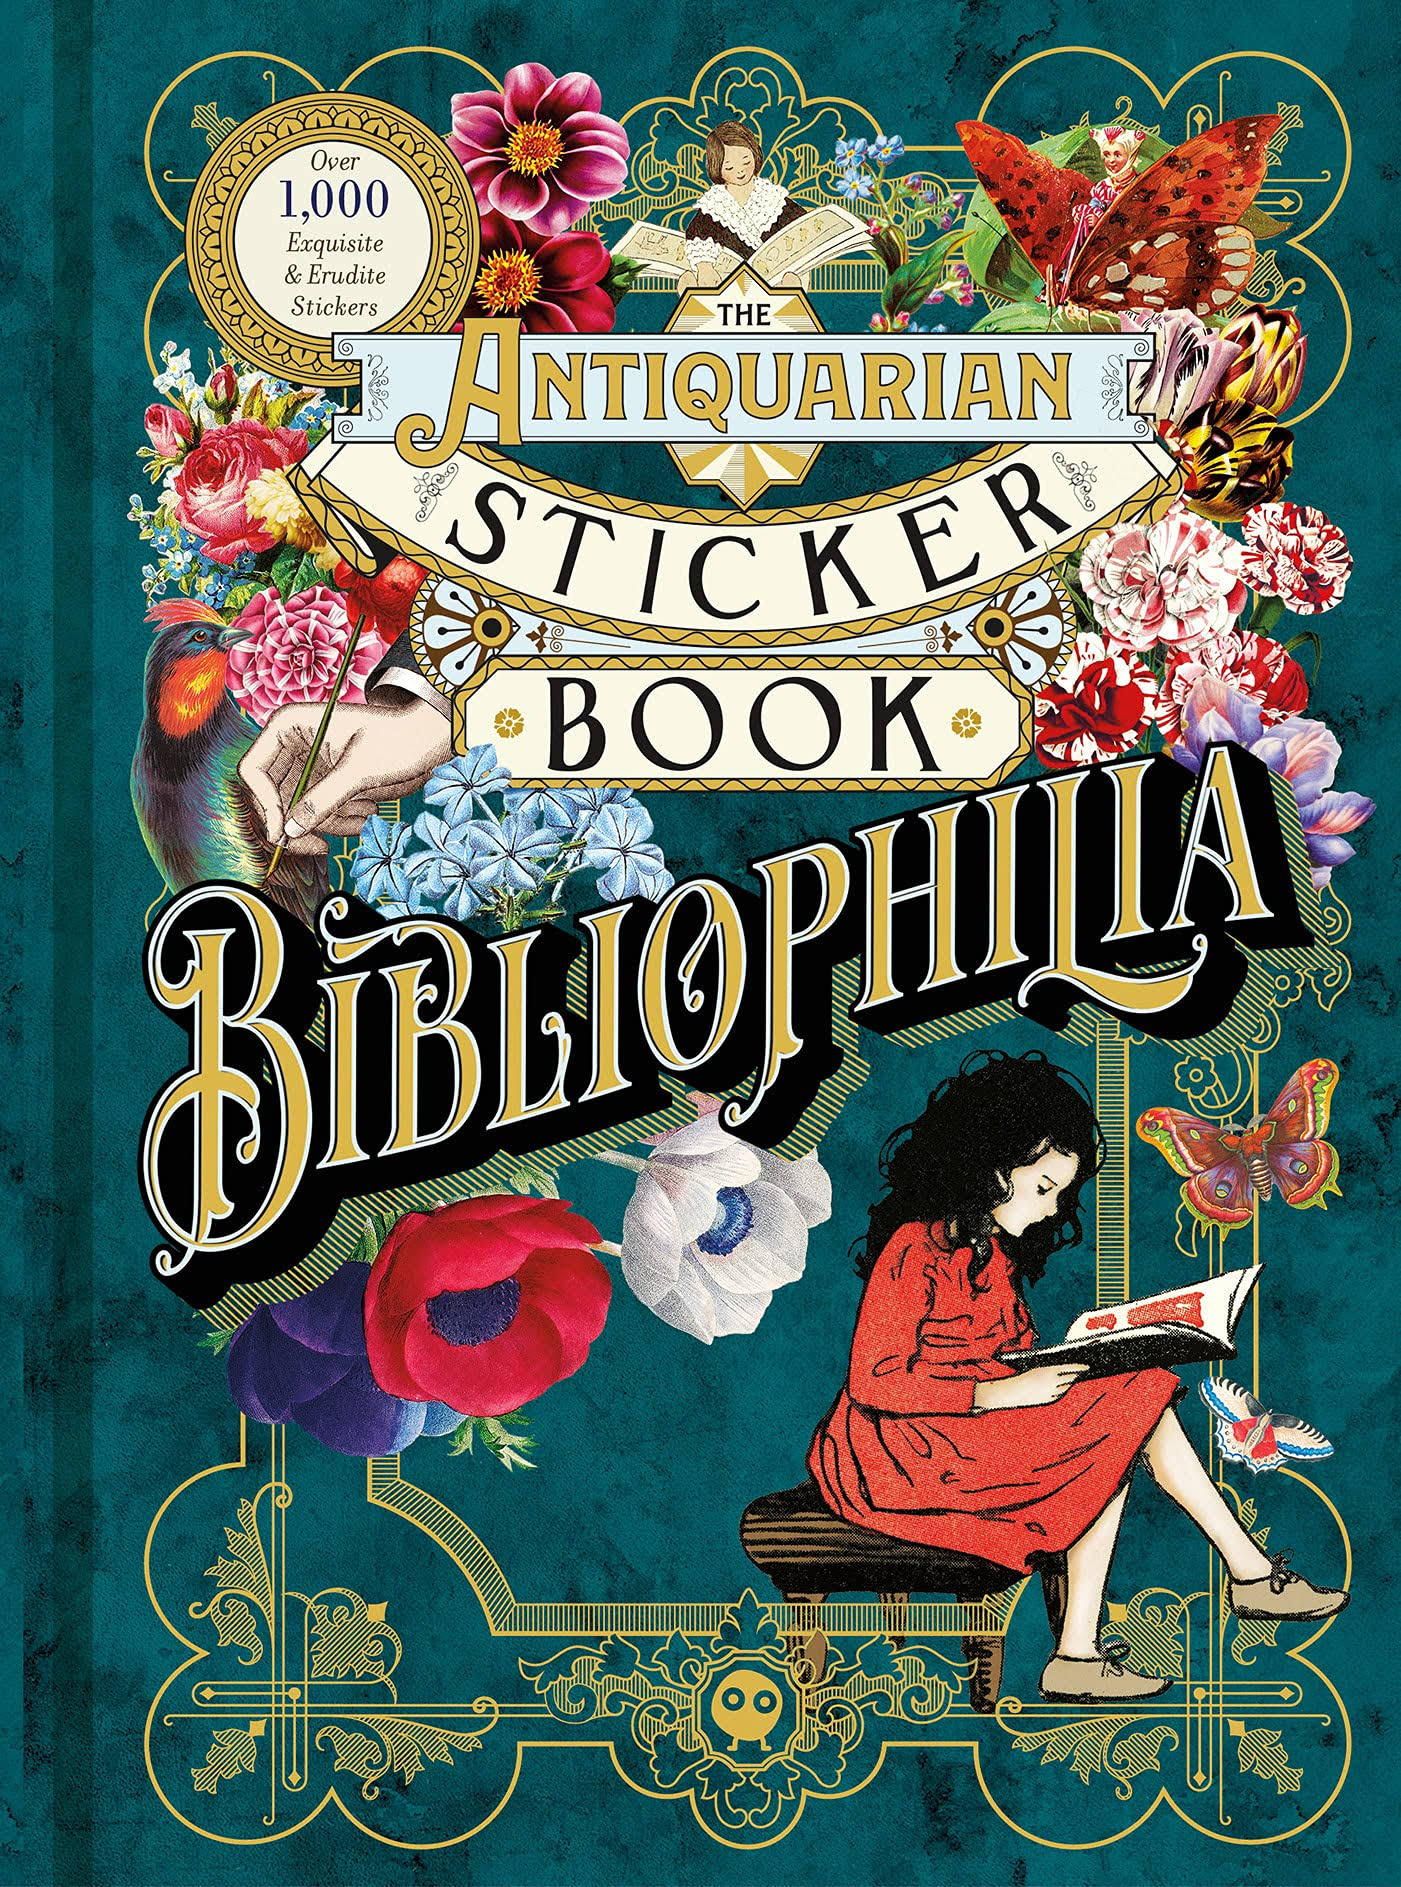 The Antiquarian Sticker Book Bibliophilia by Odd Dot